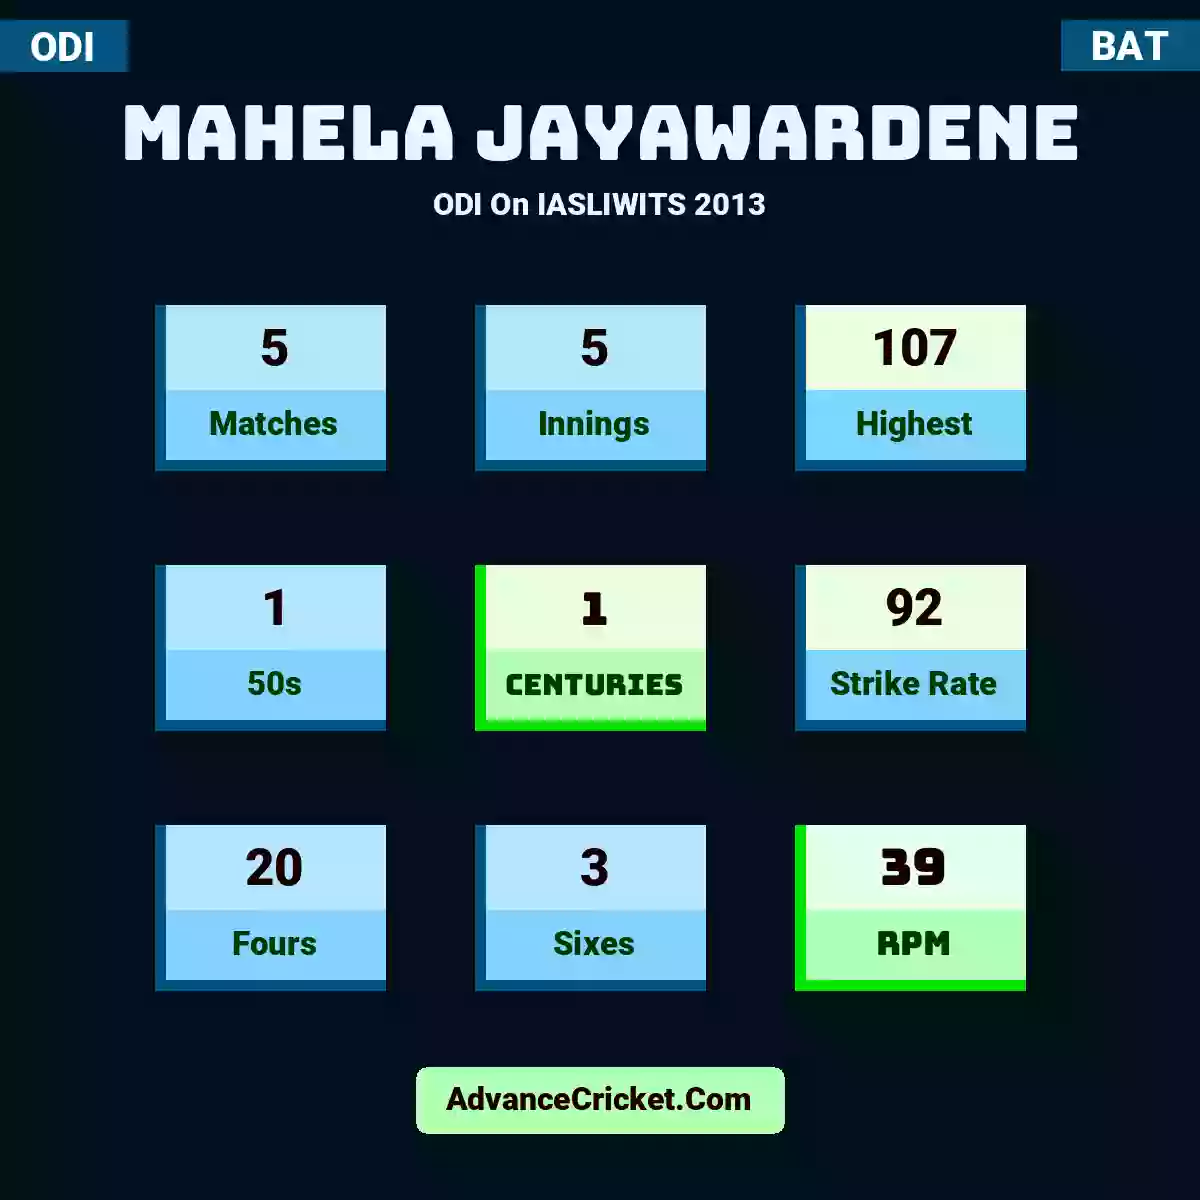 Mahela Jayawardene ODI  On IASLIWITS 2013, Mahela Jayawardene played 5 matches, scored 107 runs as highest, 1 half-centuries, and 1 centuries, with a strike rate of 92. M.Jayawardene hit 20 fours and 3 sixes, with an RPM of 39.